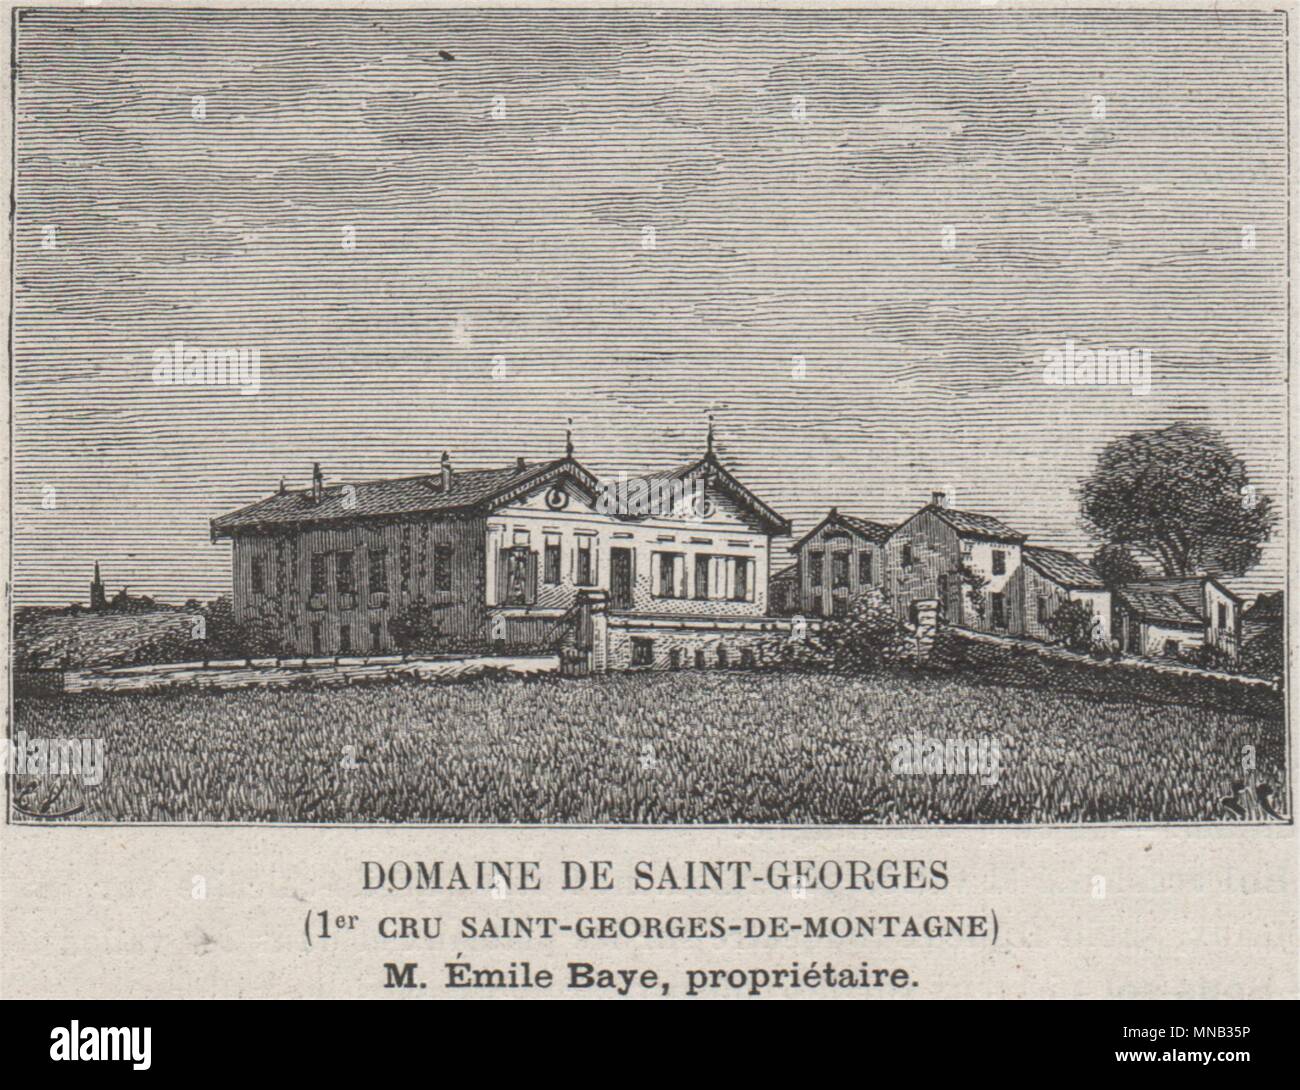 ST-ÉMILION Domaine de Saint-Georges 1er Cru St-Georges-de-Montagne SMALL 1908 Stock Photo